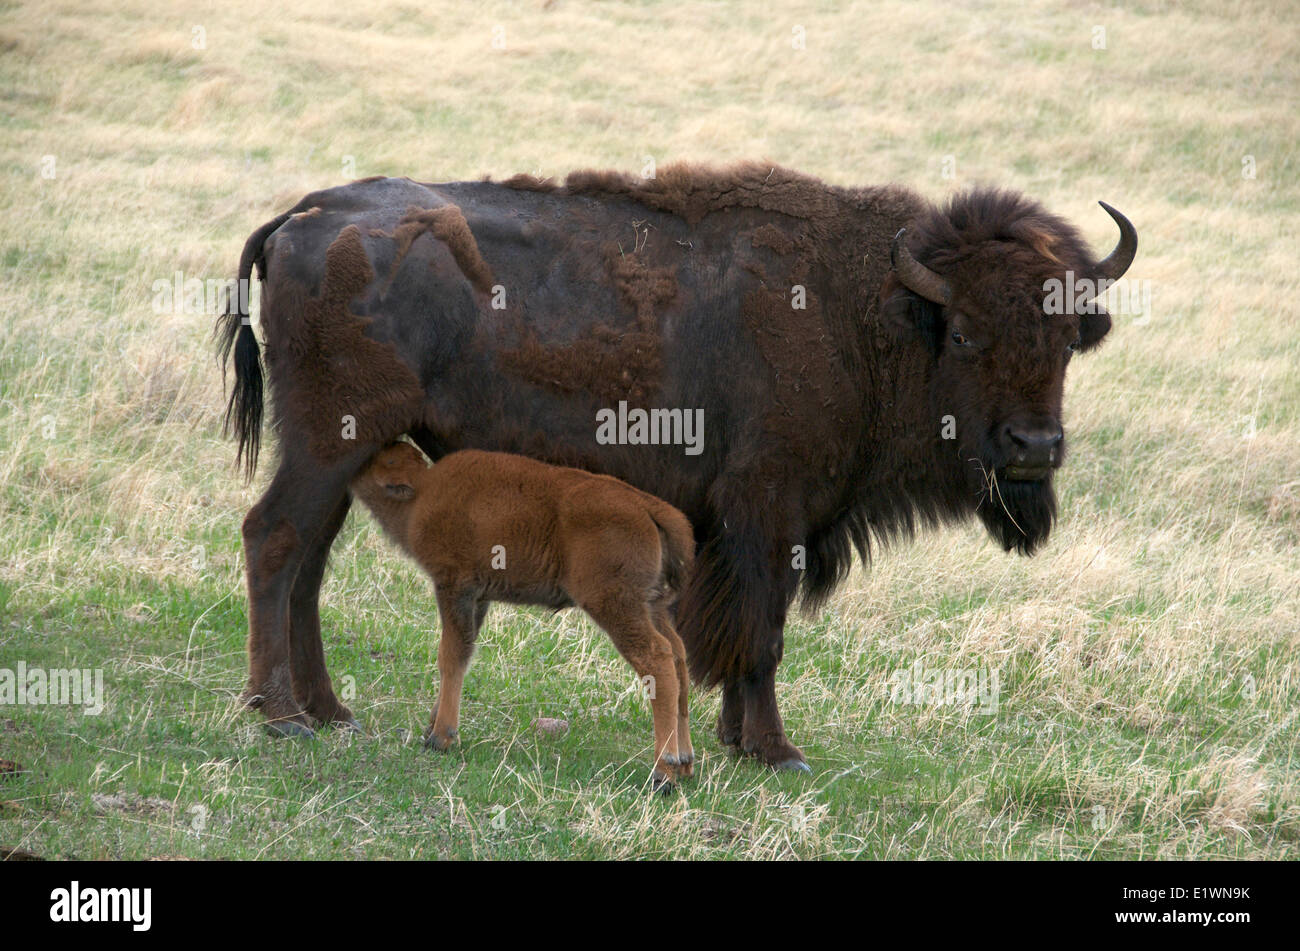 Wild i bisonti americani (Bison bison) con allattamento neonato vitello a molla. Grotta del Vento Nat'l Park, il Dakota del Sud, Stati Uniti d'America. Foto Stock